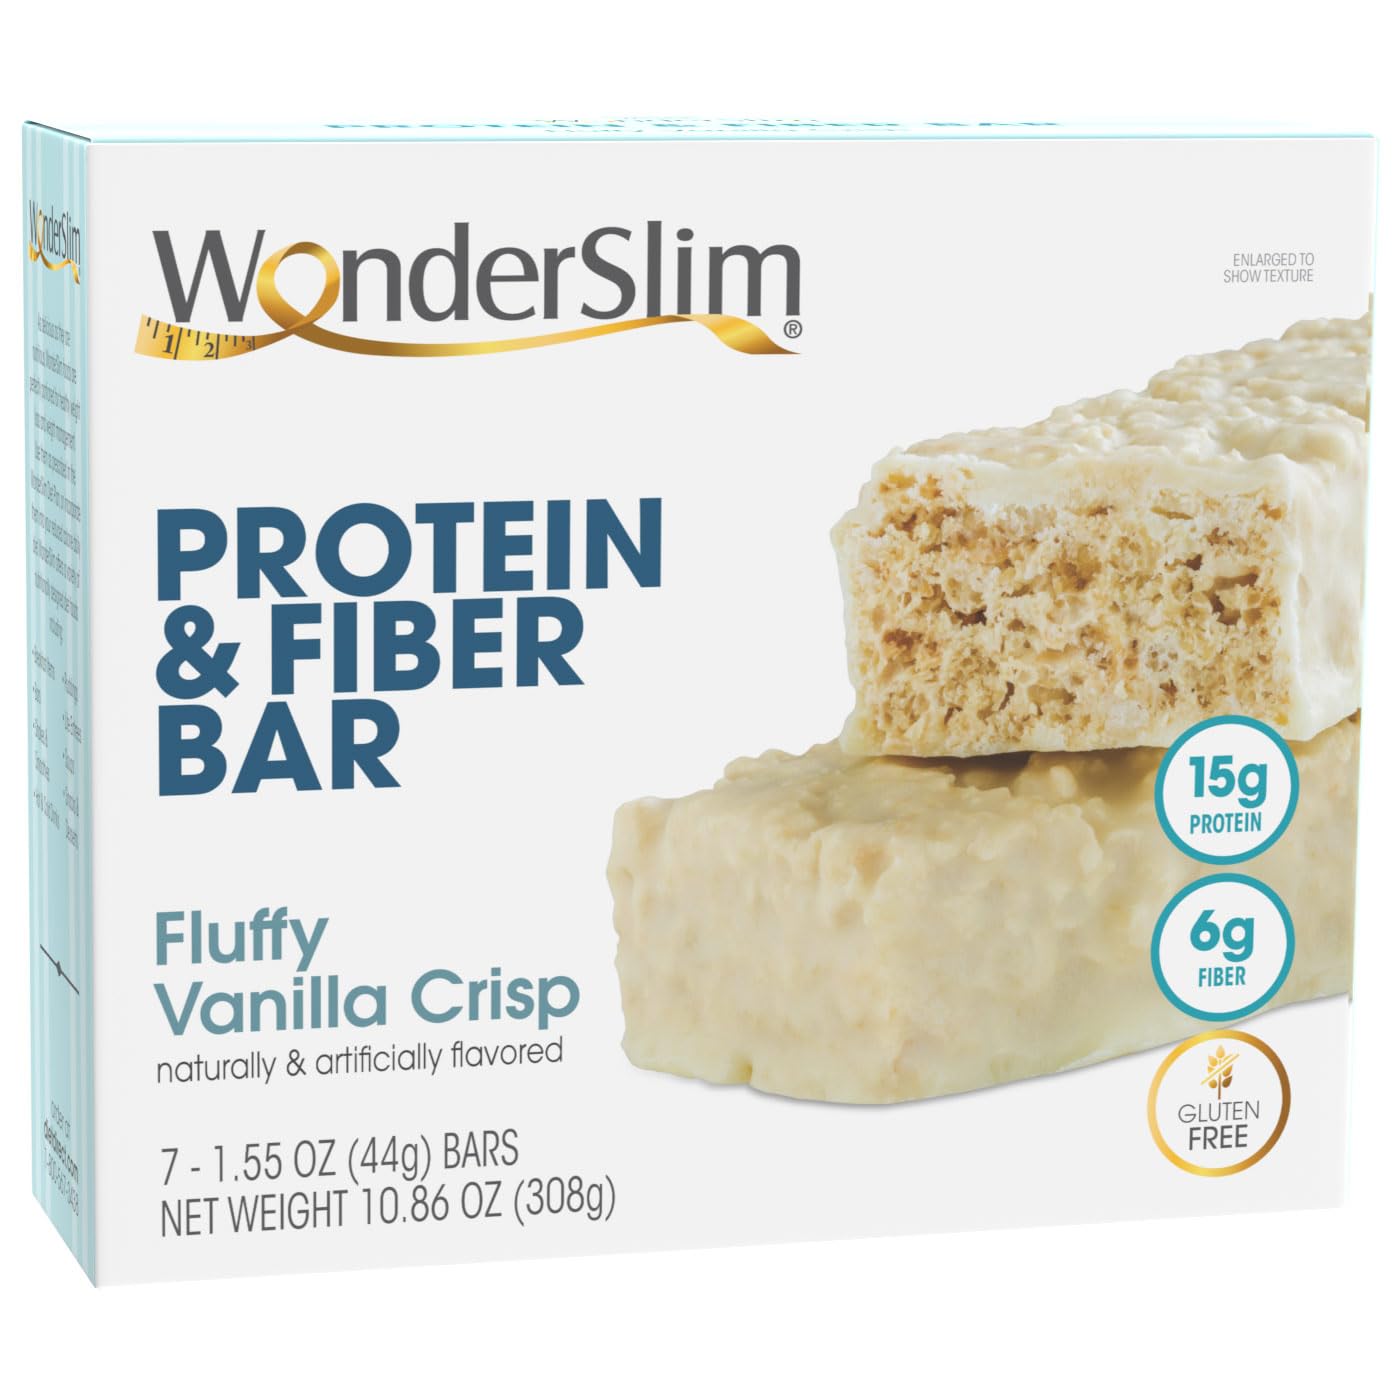 WonderSlim Protein & Fiber Bar, Fluffy Vanilla Crisp - 15g Protein, 7g Fiber, Gluten Free (7ct)